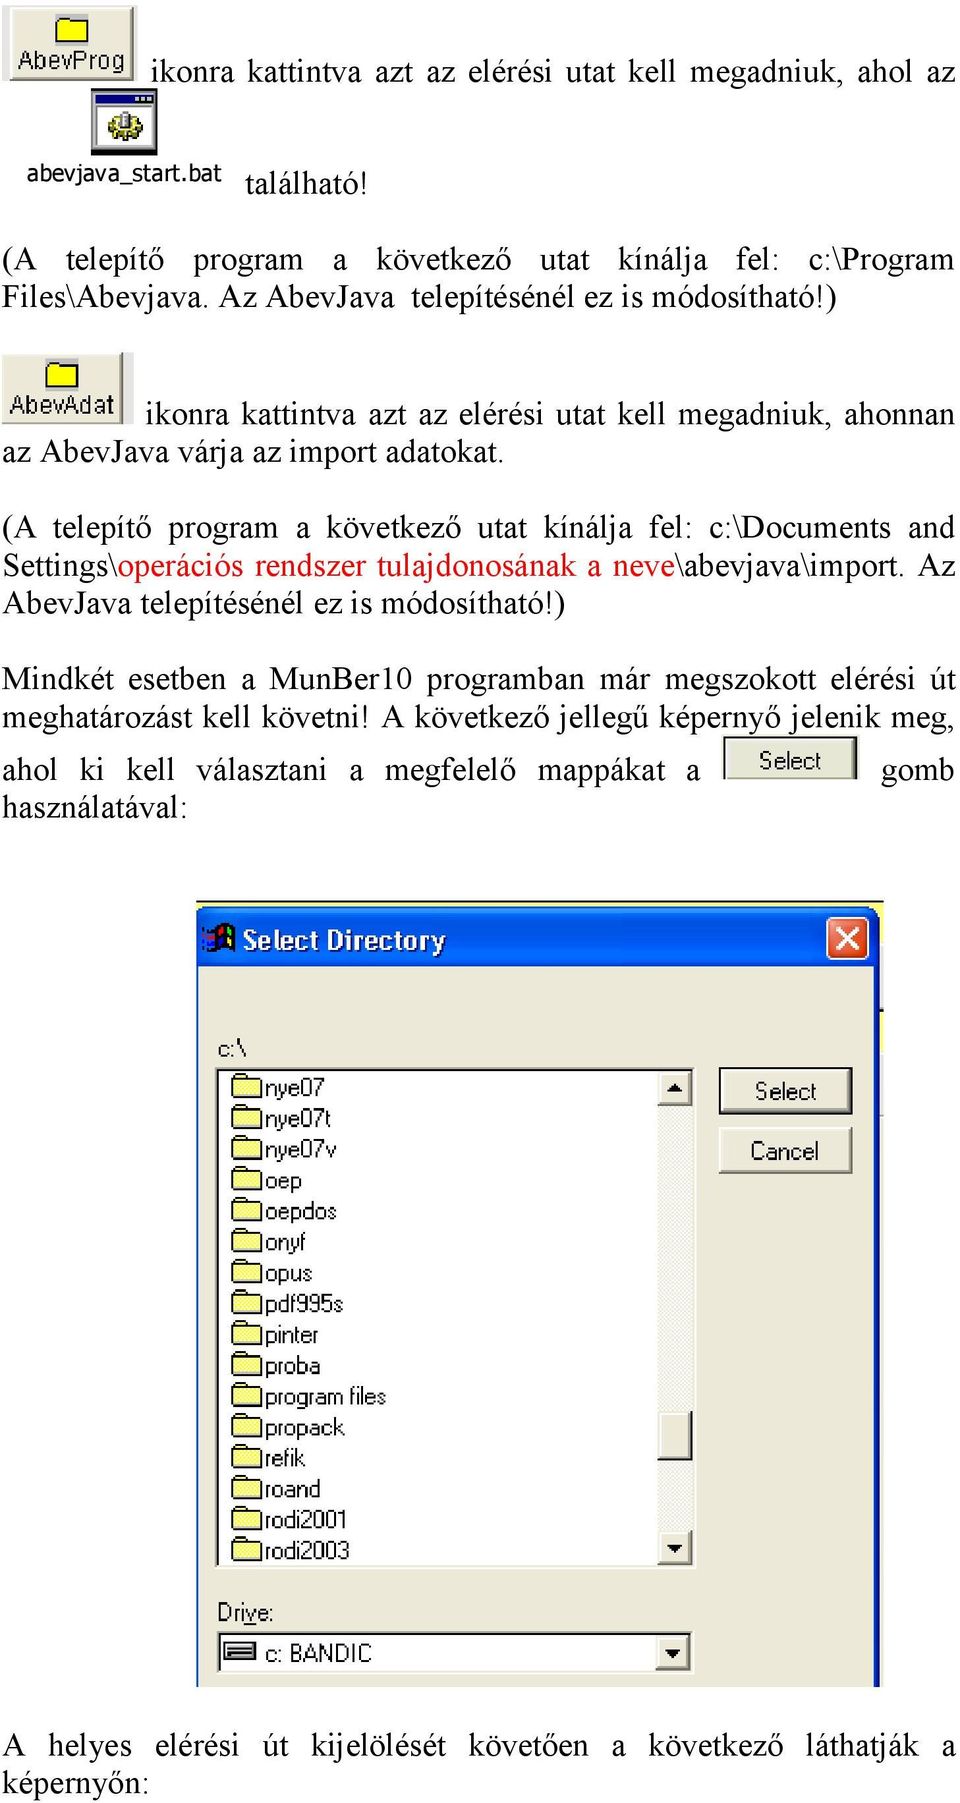 (A telepítő program a következő utat kínálja fel: c:\documents and Settings\operációs rendszer tulajdonosának a neve\abevjava\import. Az AbevJava telepítésénél ez is módosítható!